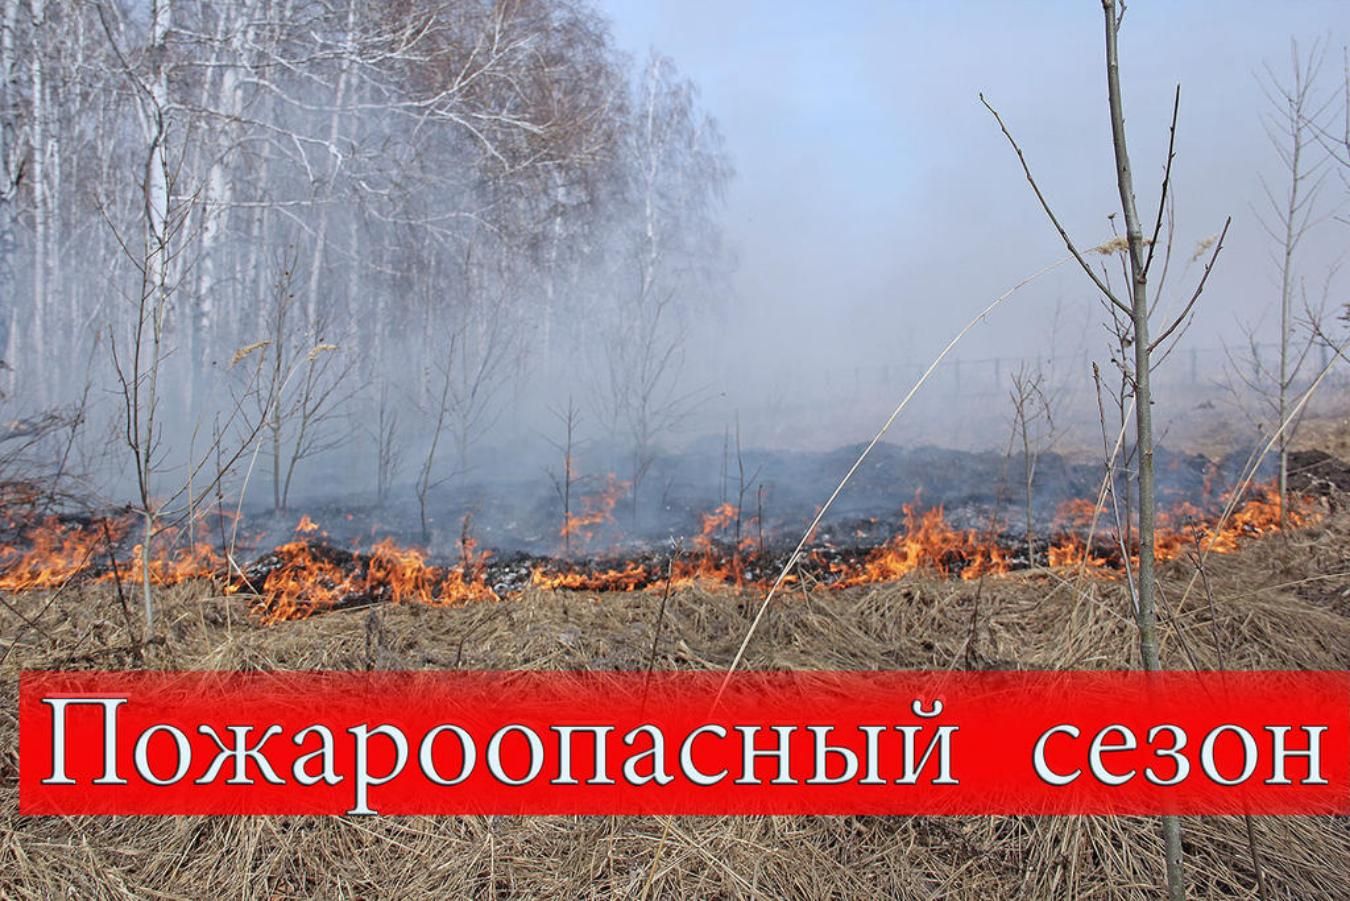 На территории Томской области установлен особый противопожарный режим